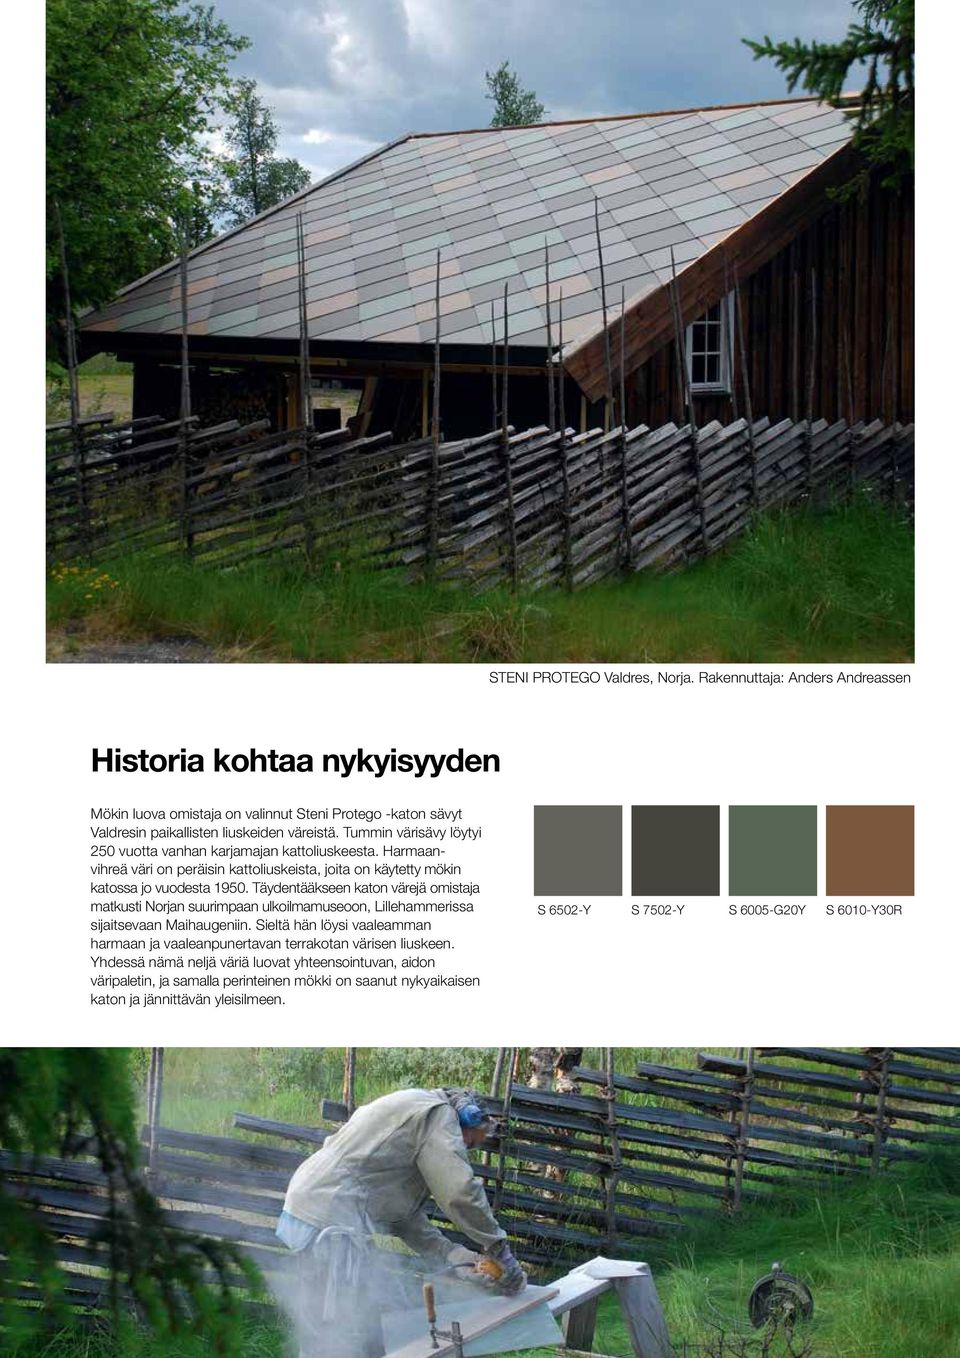 Täydentääkseen katon värejä omistaja matkusti Norjan suurimpaan ulkoilmamuseoon, Lillehammerissa sijaitsevaan Maihaugeniin.